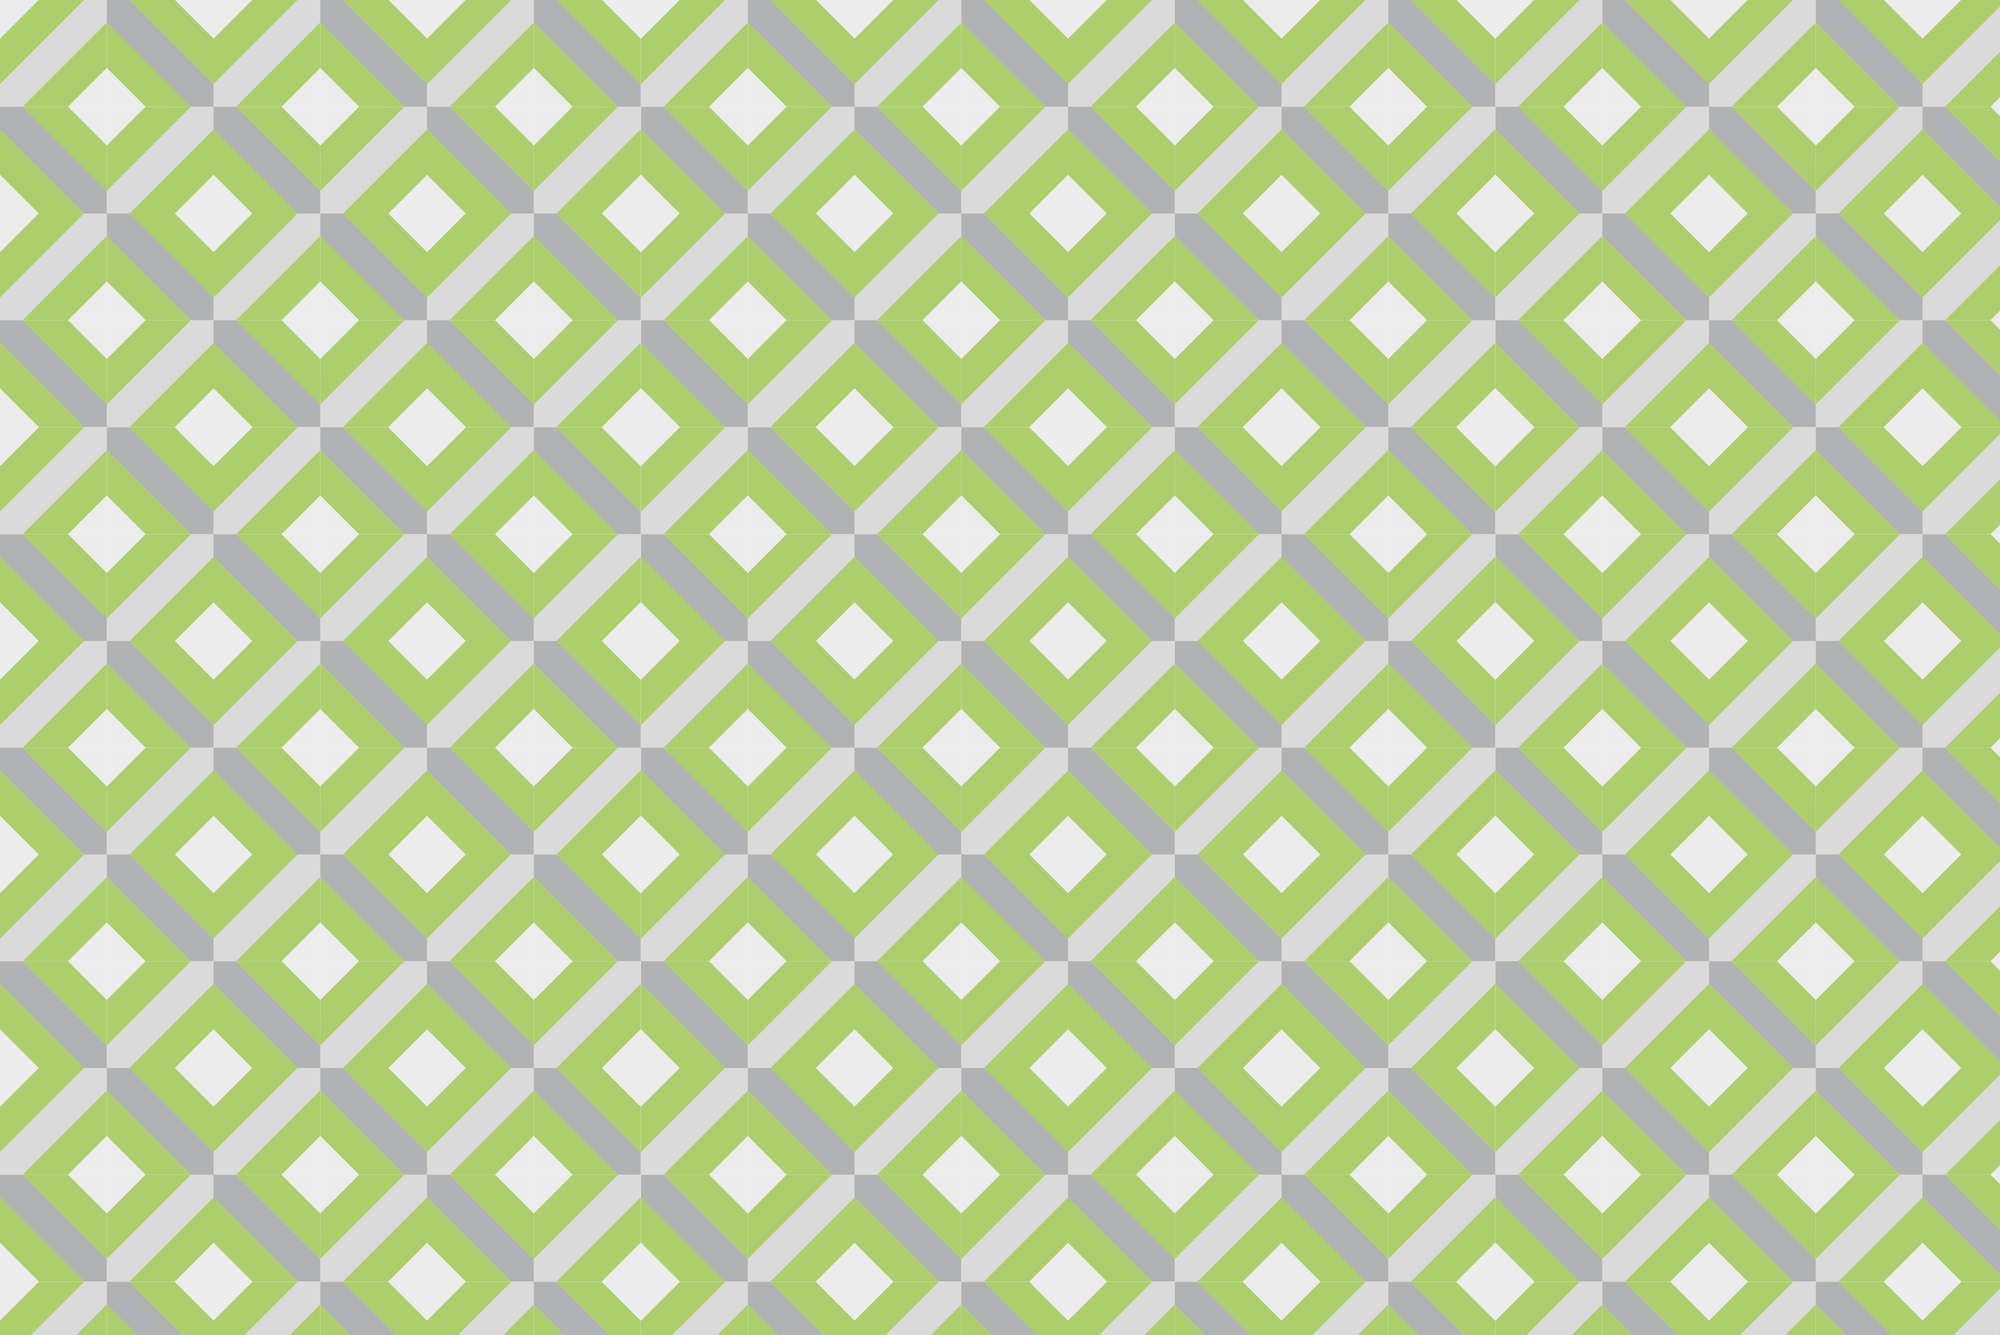             Design Fototapete Kästchen Motiv mit kleinen Quadraten grün auf Perlmutt Glattvlies
        